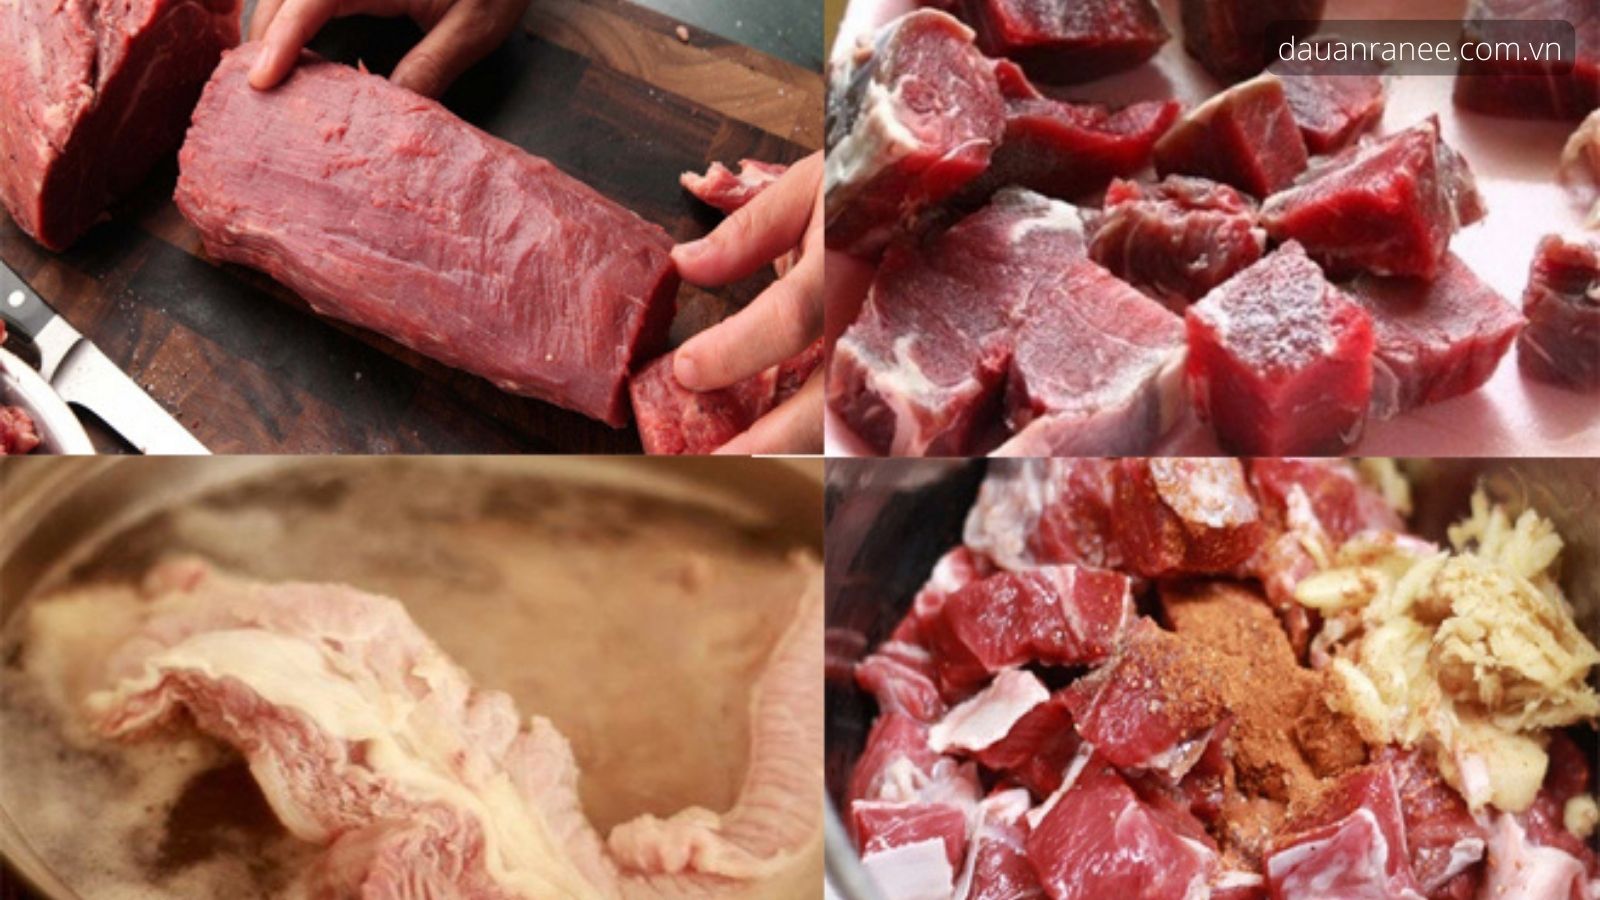 Ướp thịt - Cách nấu bò kho tại nhà ngon nhất